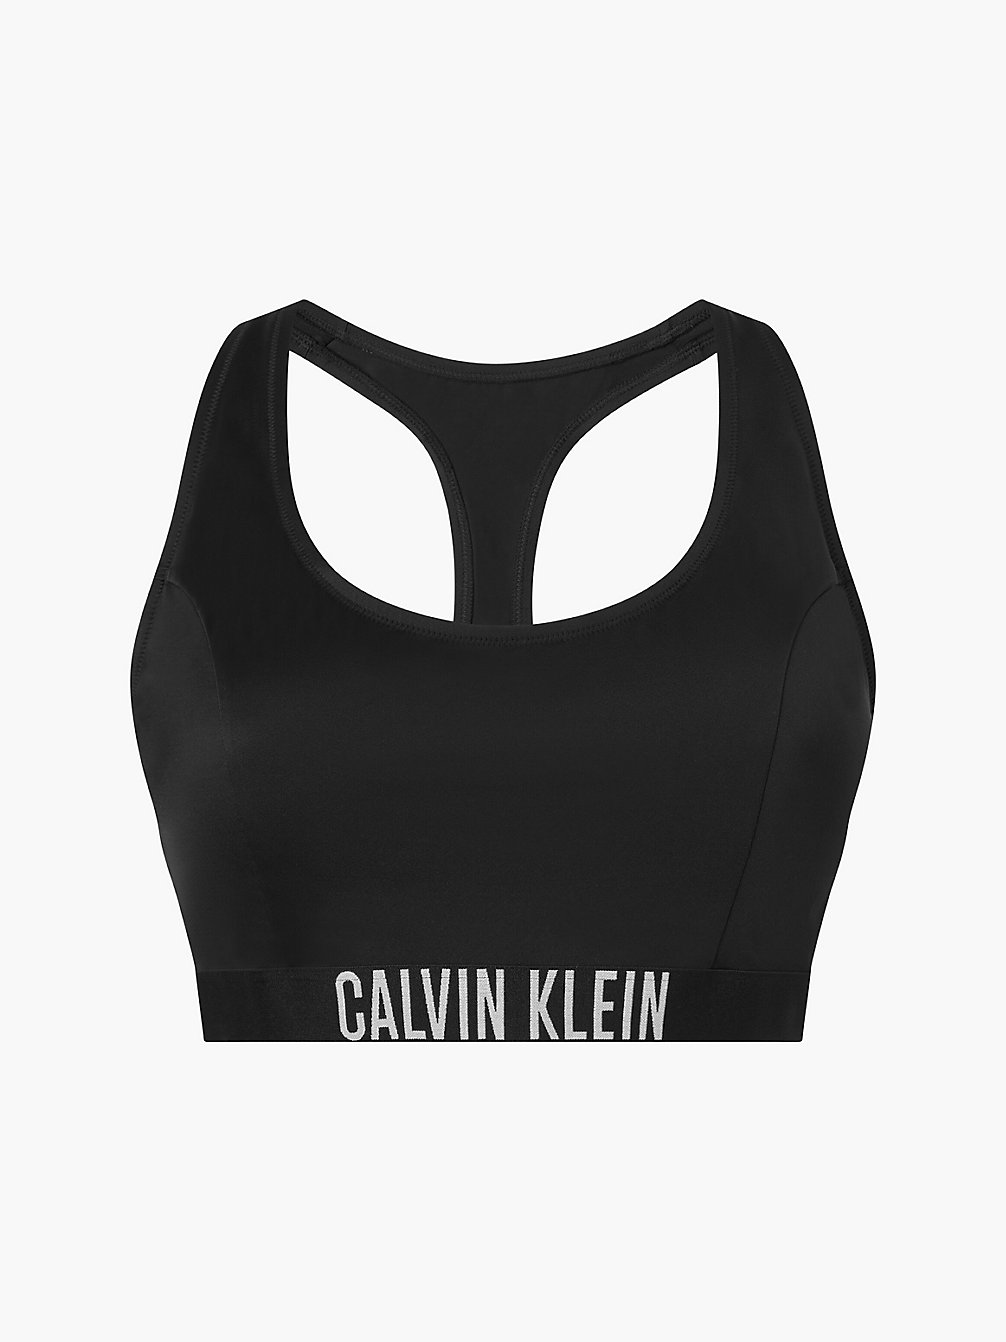 PVH BLACK > Bralette Bikini-Top In Großen Größen - Intense Power > undefined Damen - Calvin Klein